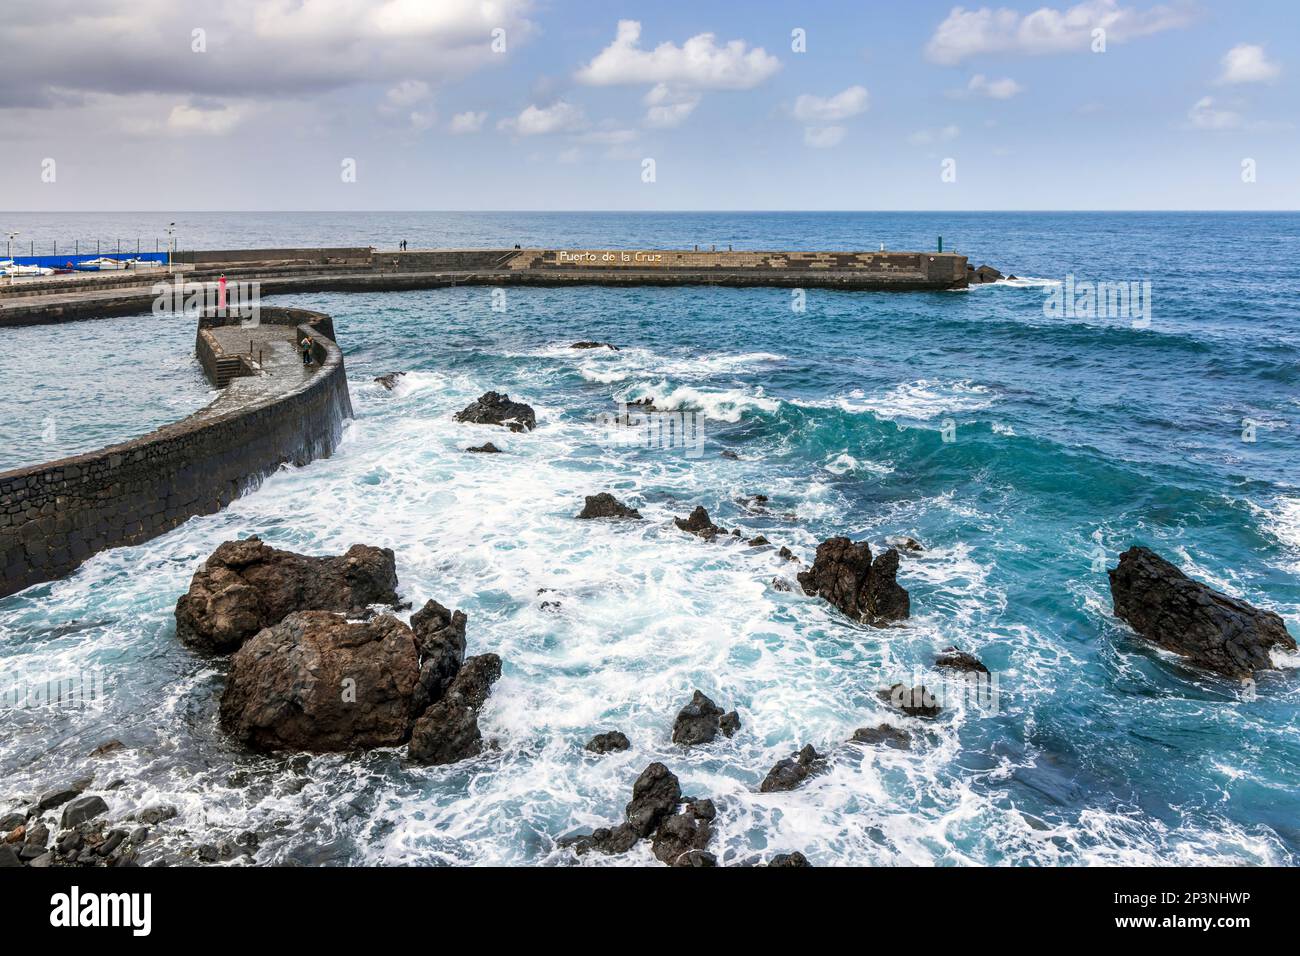 Ingresso al porto e molo di pesca a Puerto de la Cruz, nel nord di Tenerife, Isole Canarie. Foto Stock